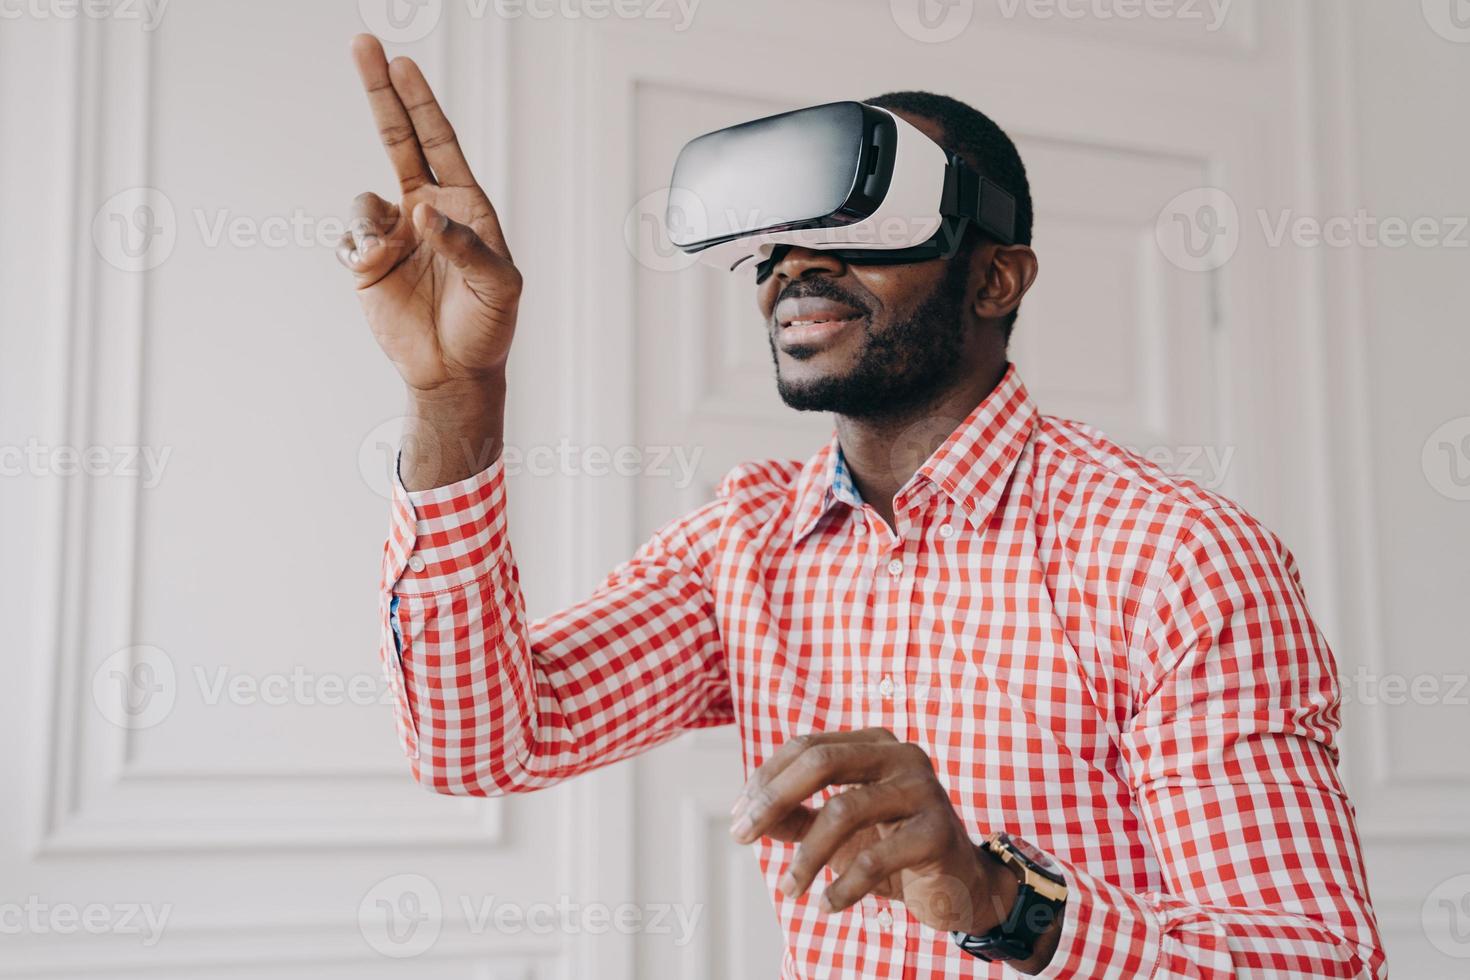 impressionato ragazzo di etnia africana in occhiali vr headset godendo la realtà virtuale online al lavoro foto